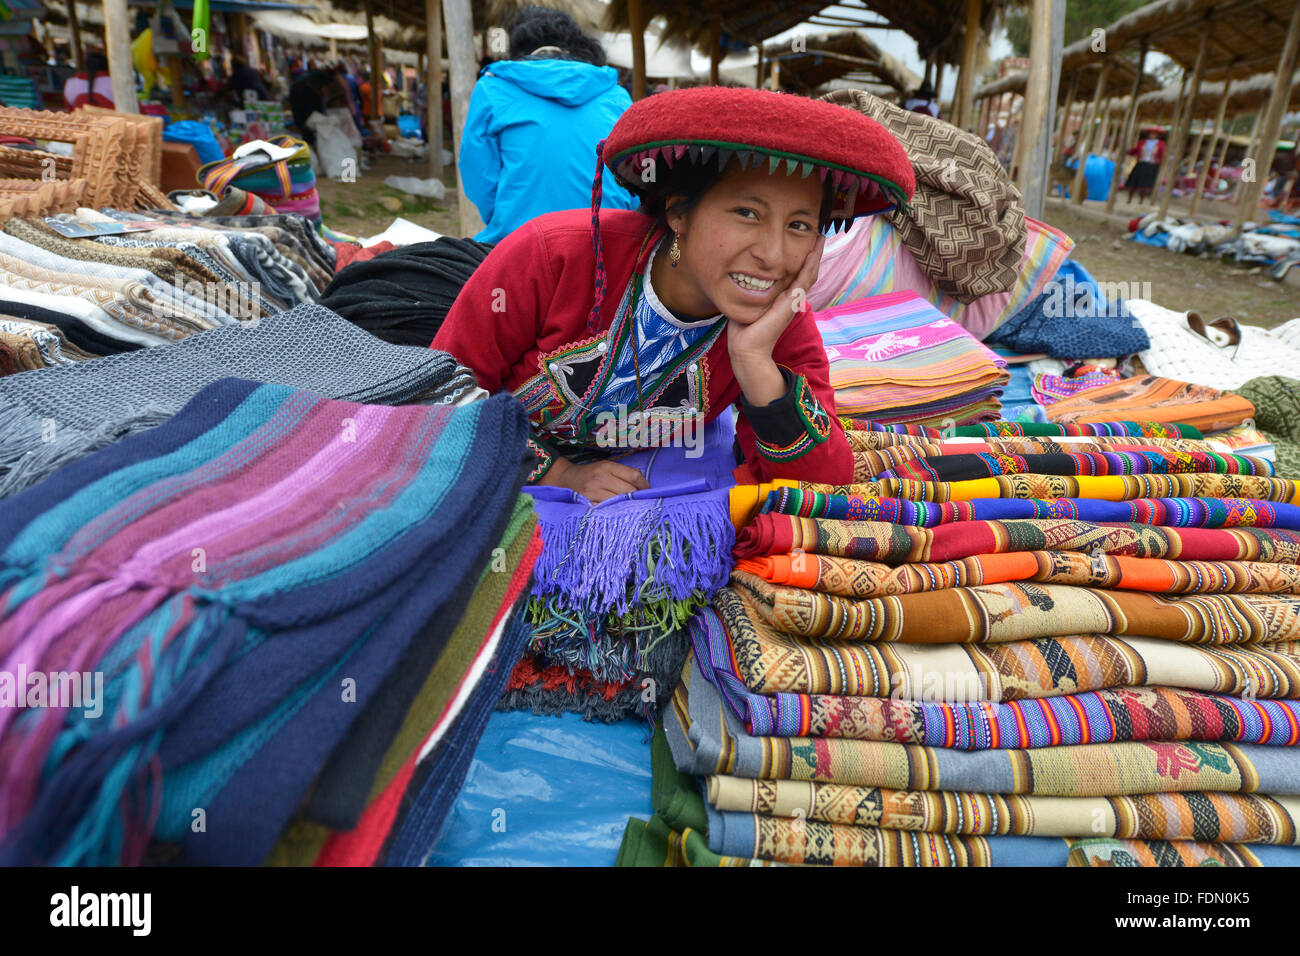 Chinchero, Peru - 20. September 2015: Peruanische Frau gekleidet in traditioneller Kleidung während der Arbeit an einer hausgemachten Wollindustrie. Stockfoto